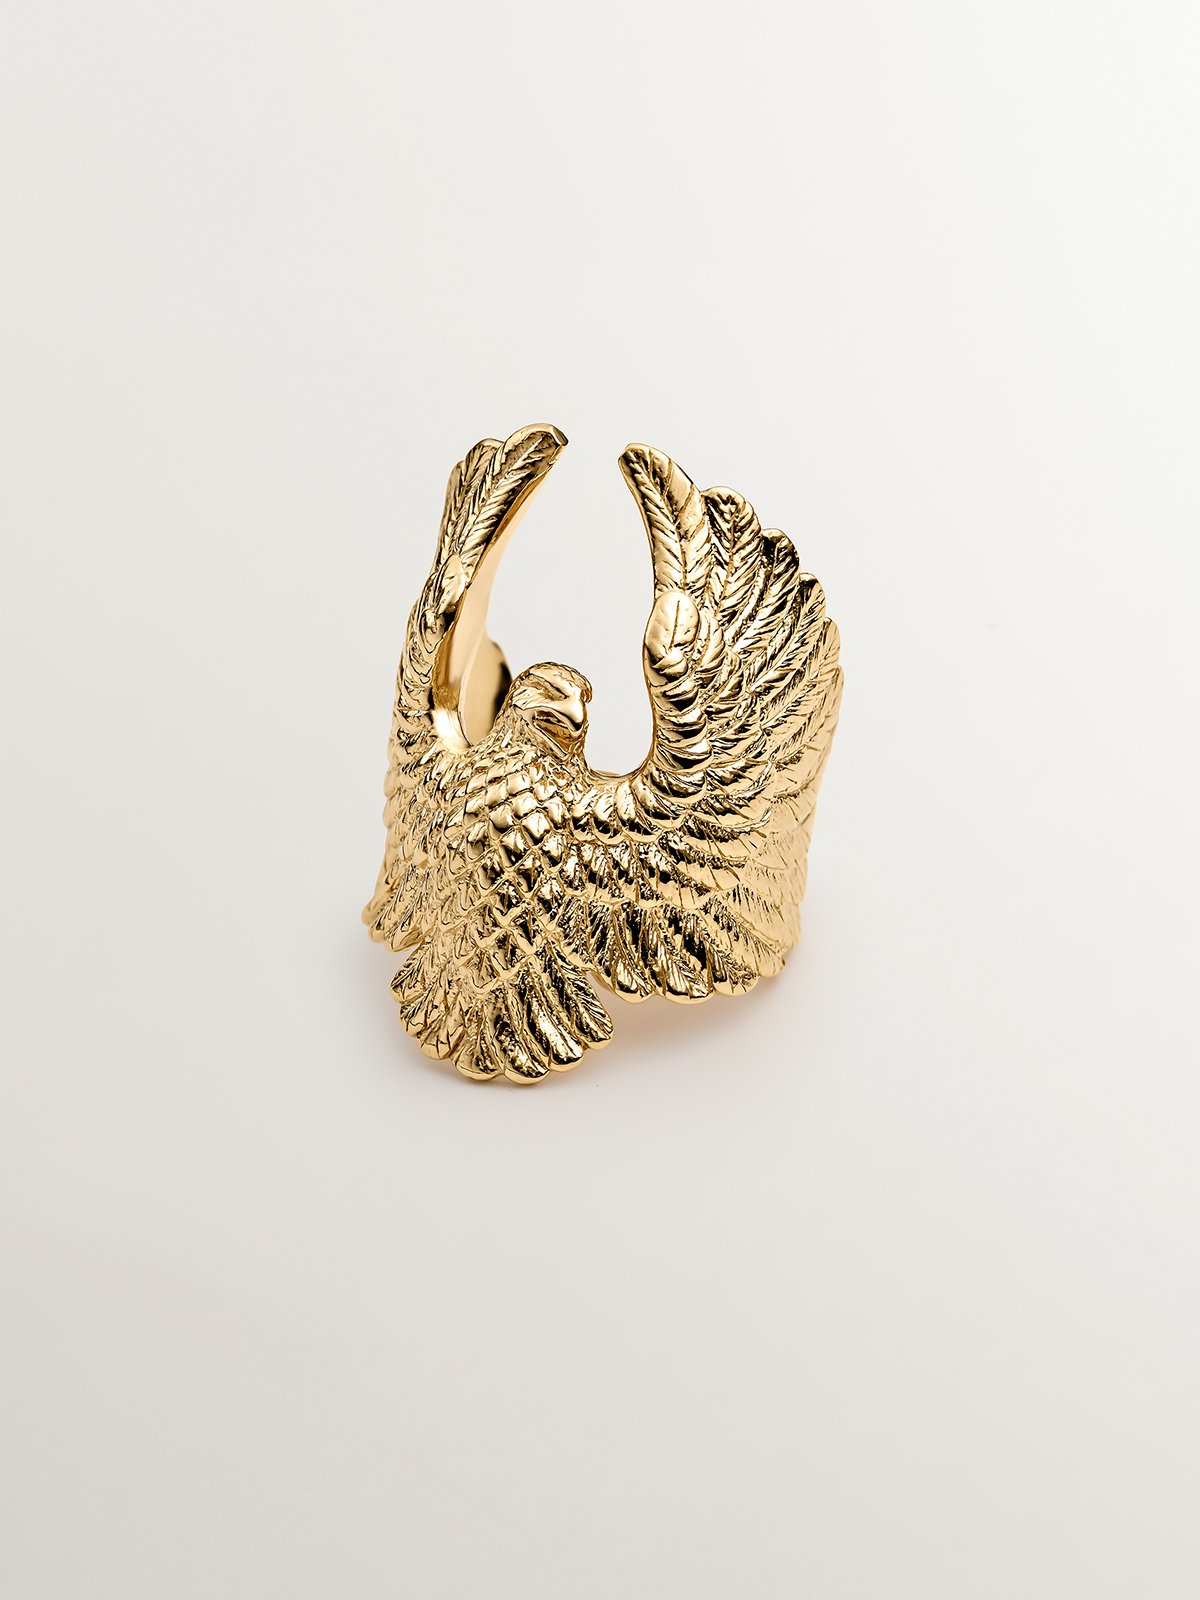 Anillo ancho de plata 925 bañada en oro amarillo de 18K con forma de águila